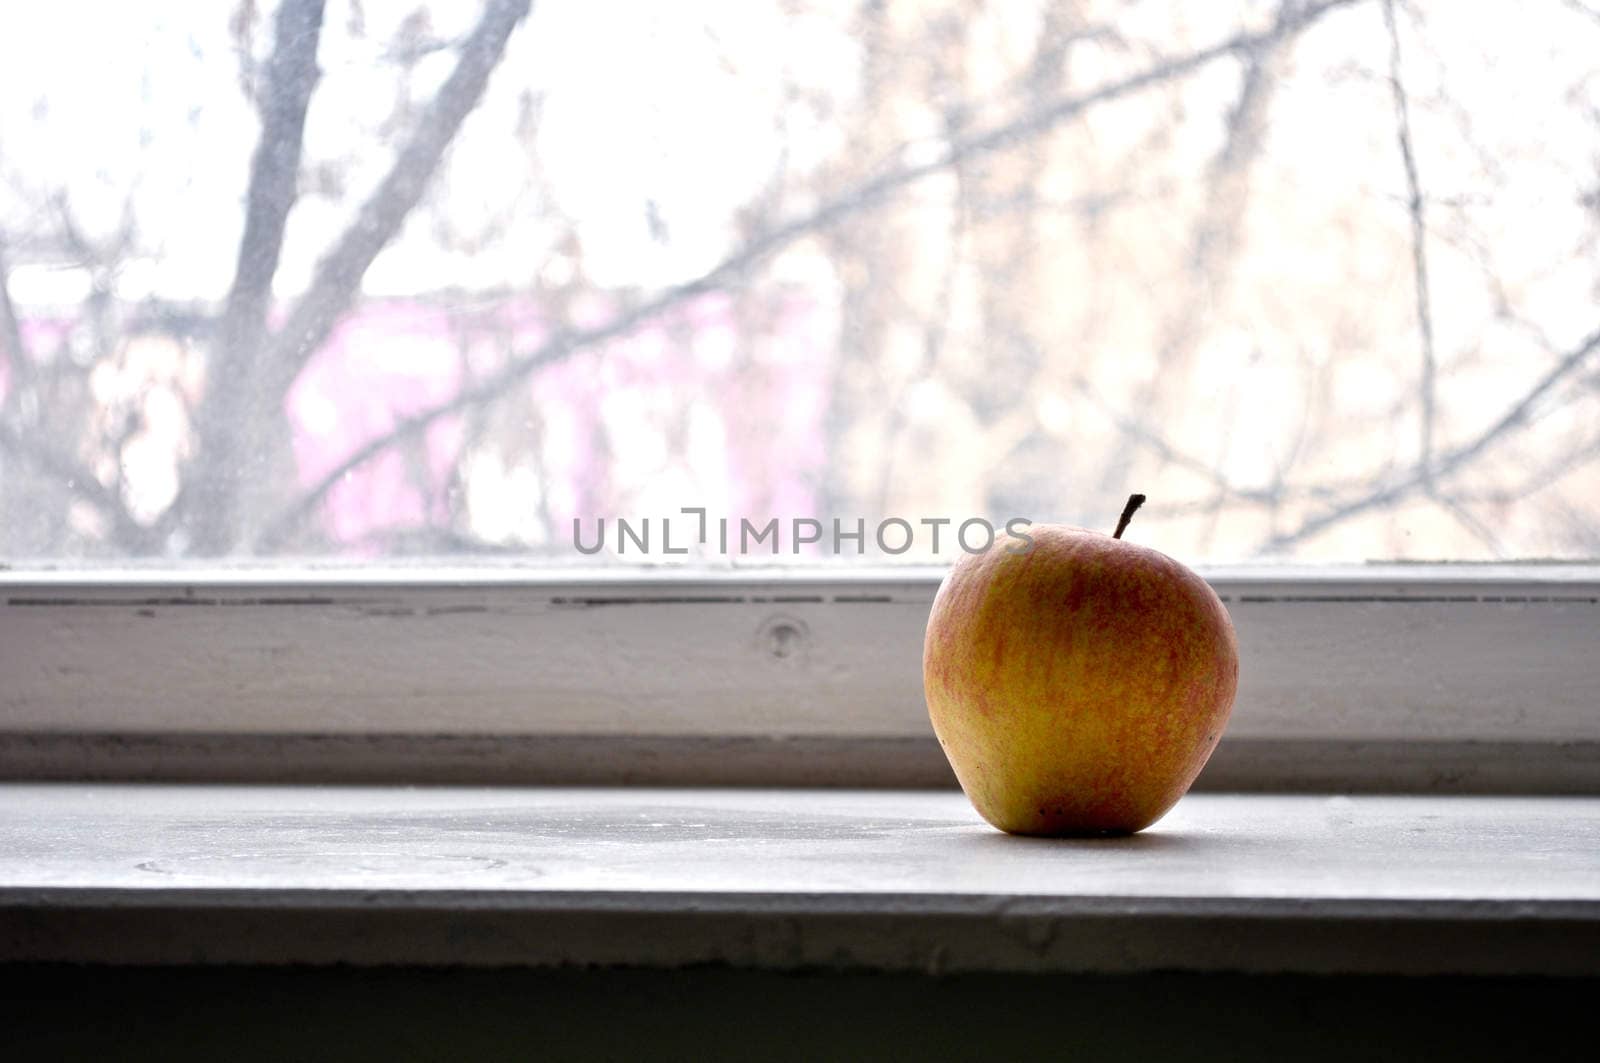 Red apple on a window sill by vlaru